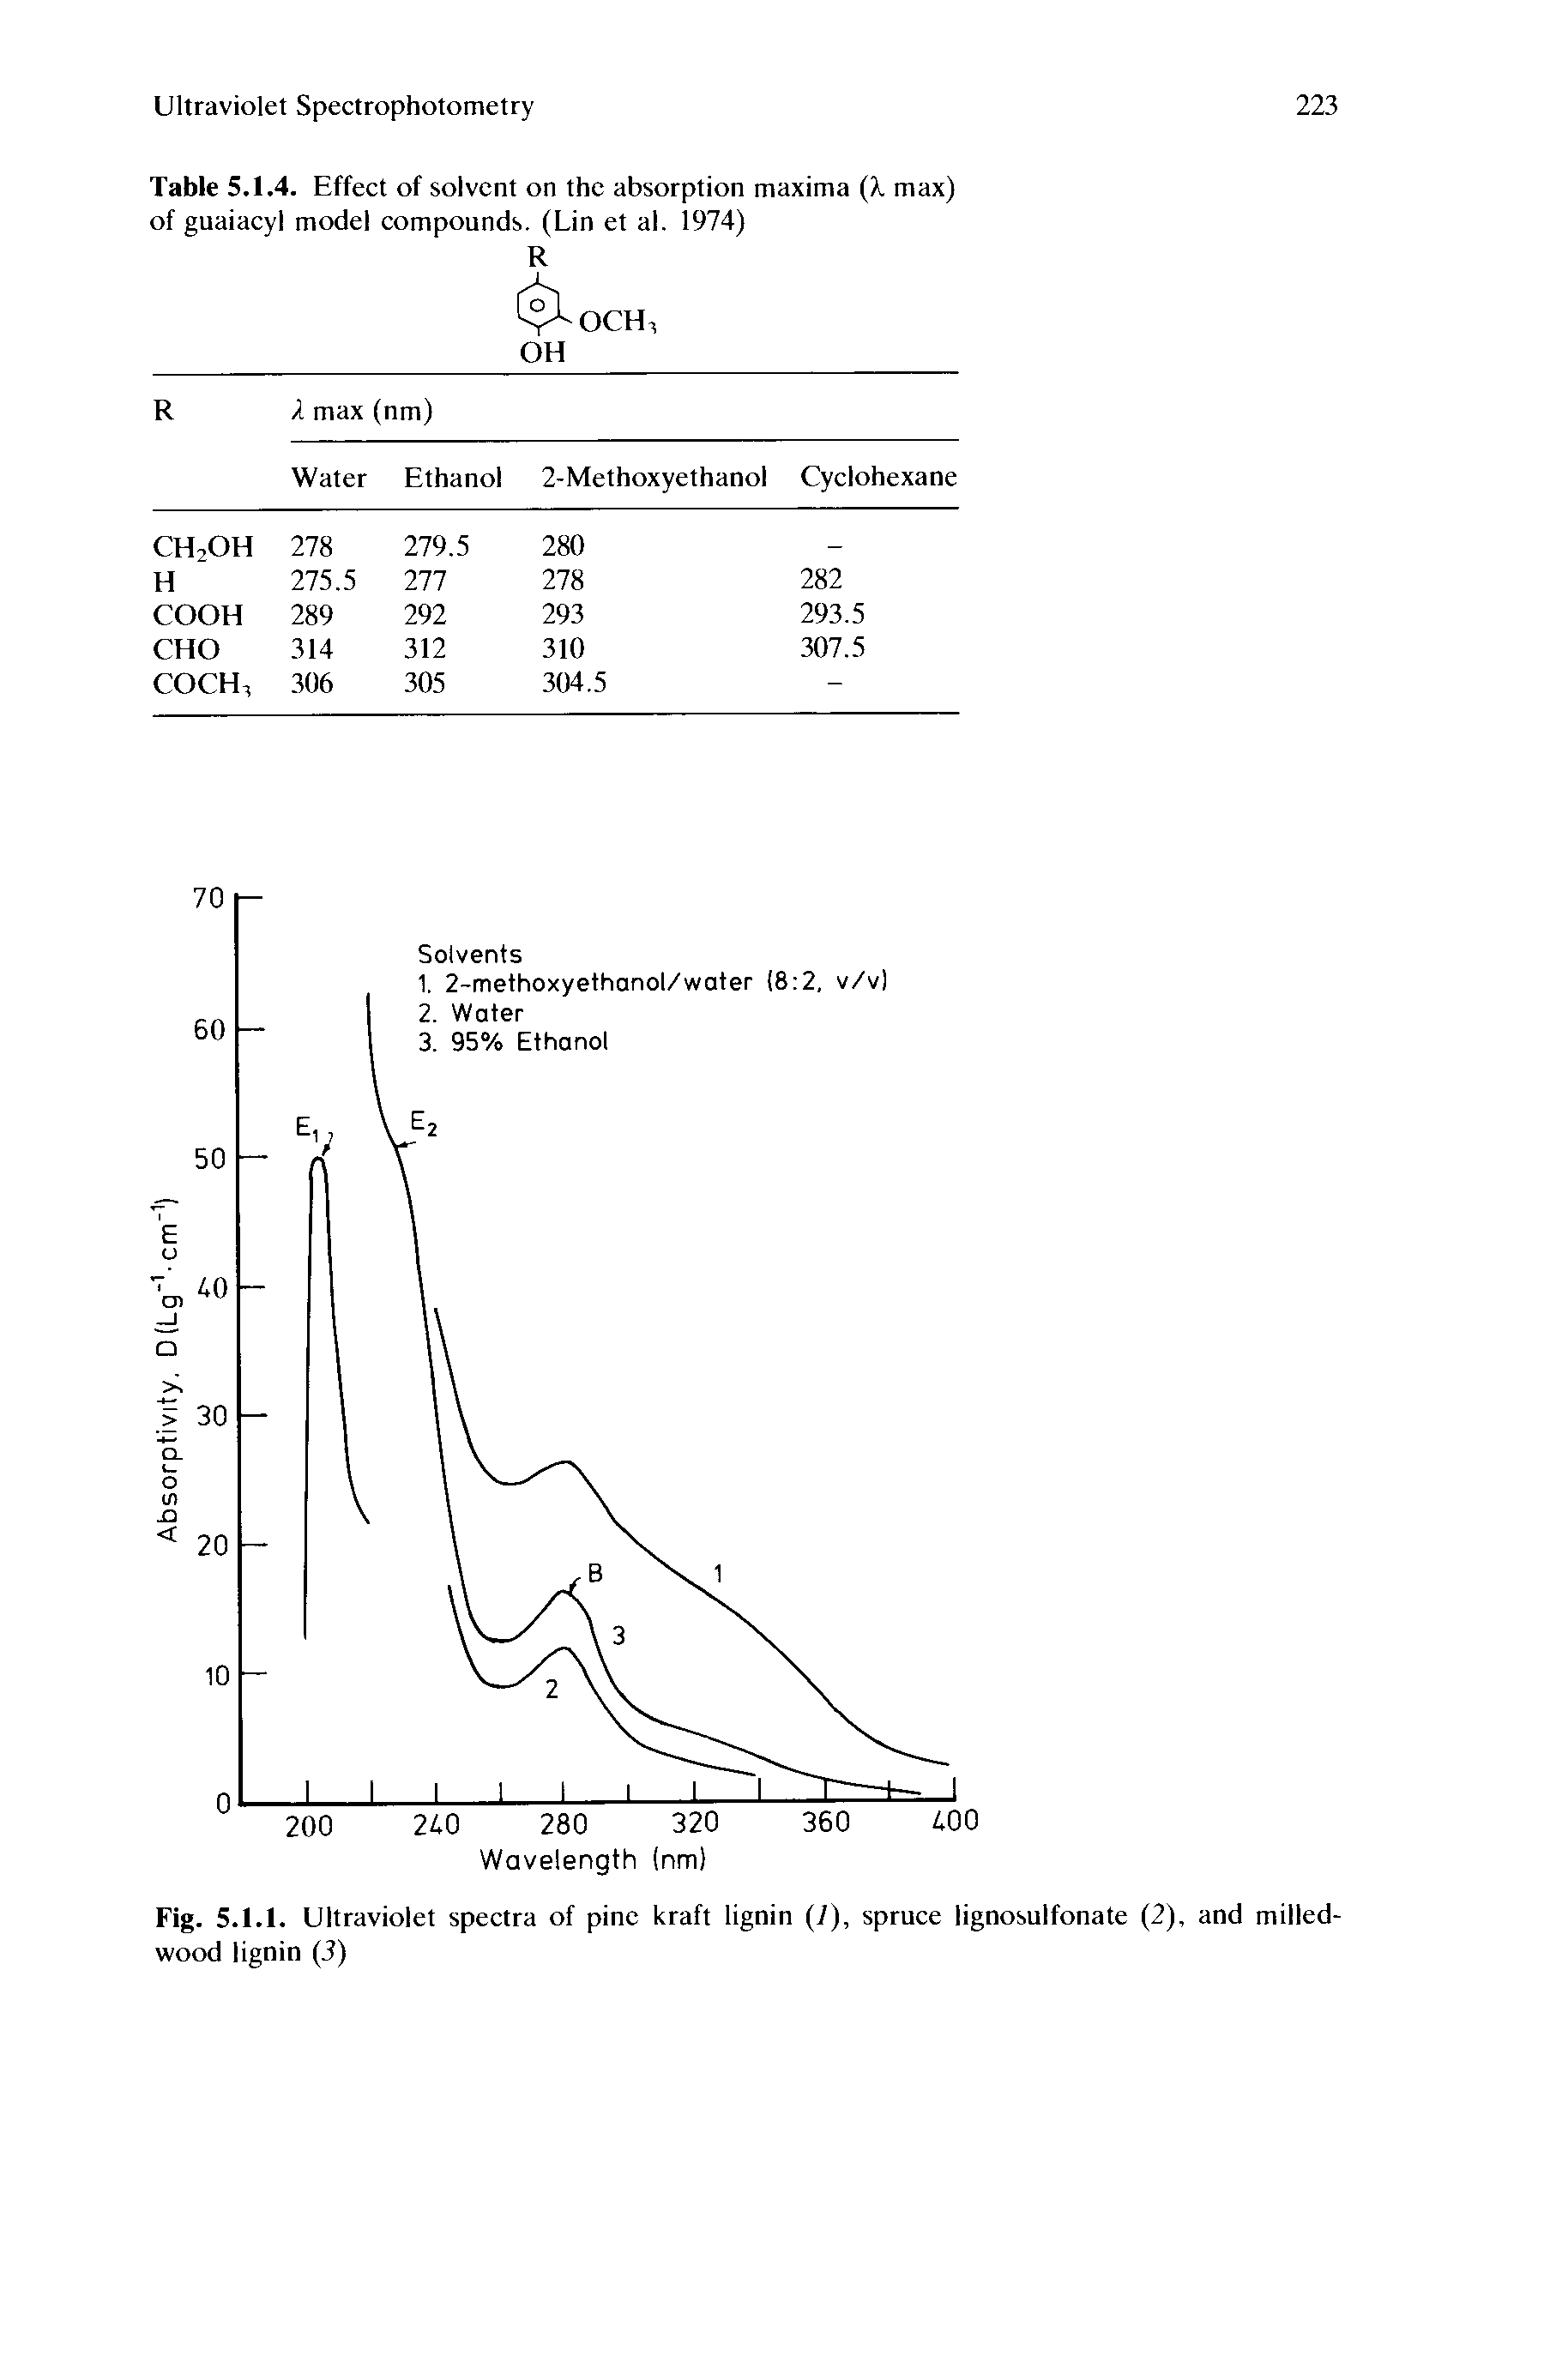 Fig. 5.1.1. Ultraviolet spectra of pine kraft lignin (]), spruce lignosulfonate (2), and milled-wood lignin (3)...